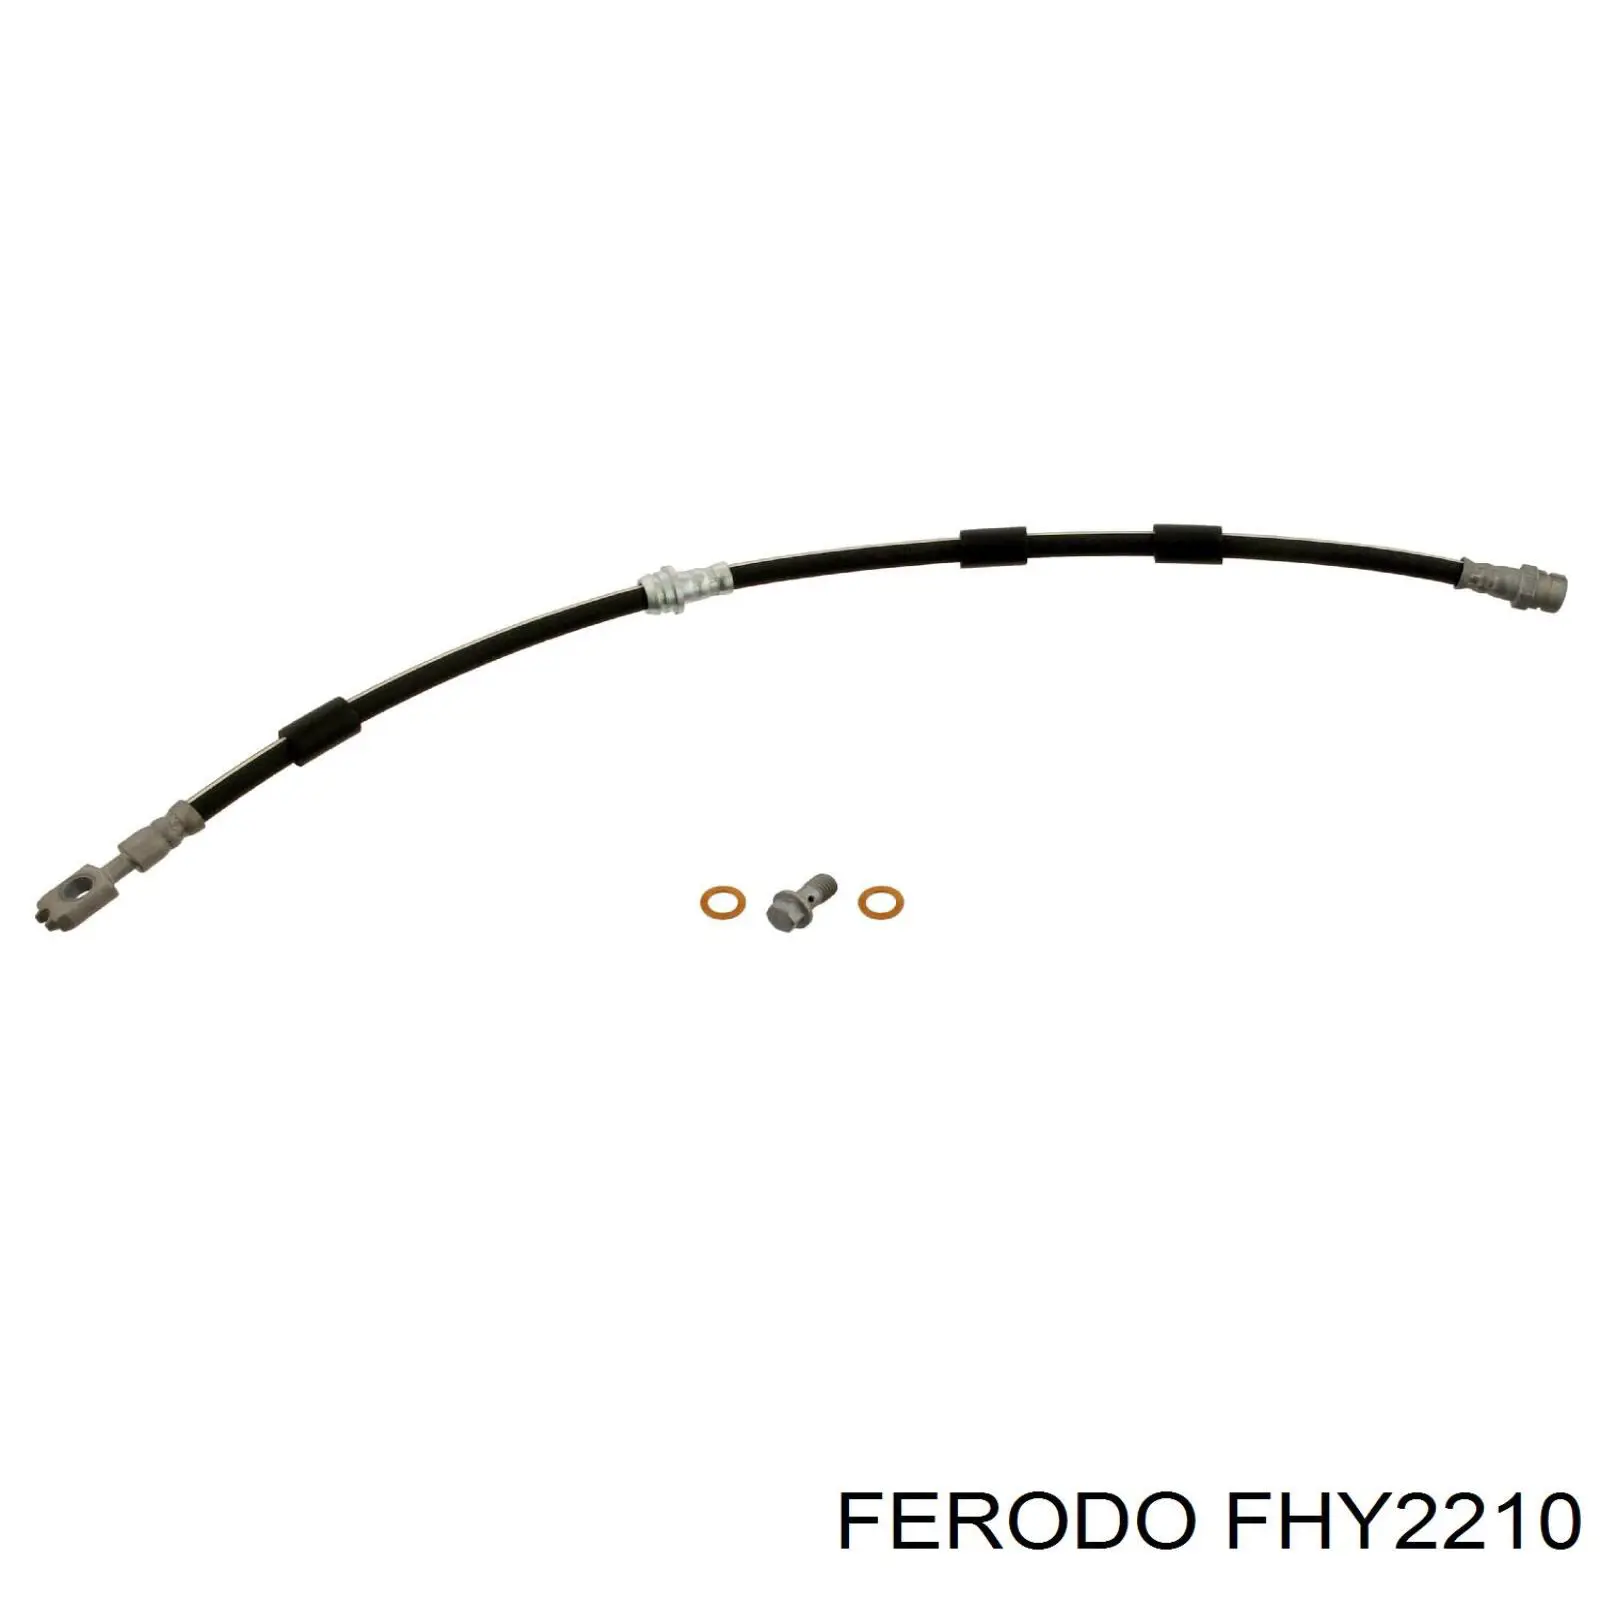 FHY2210 Ferodo latiguillo de freno delantero